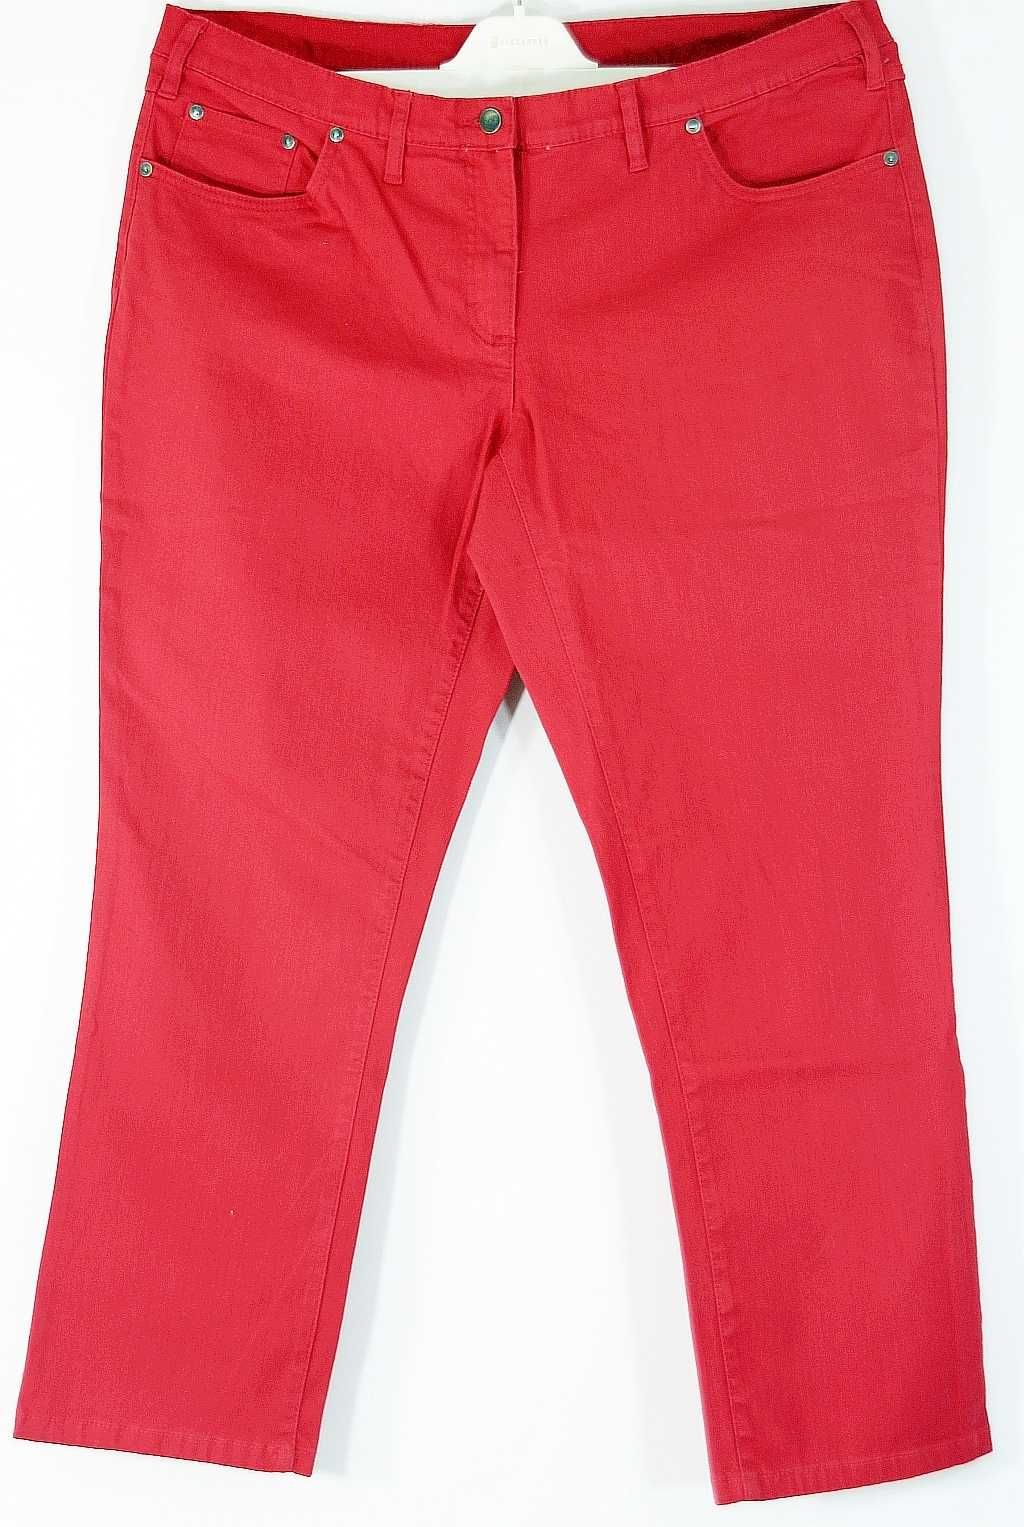 Spodnie czerwone stretch Bawełna Rozmiar 42/44